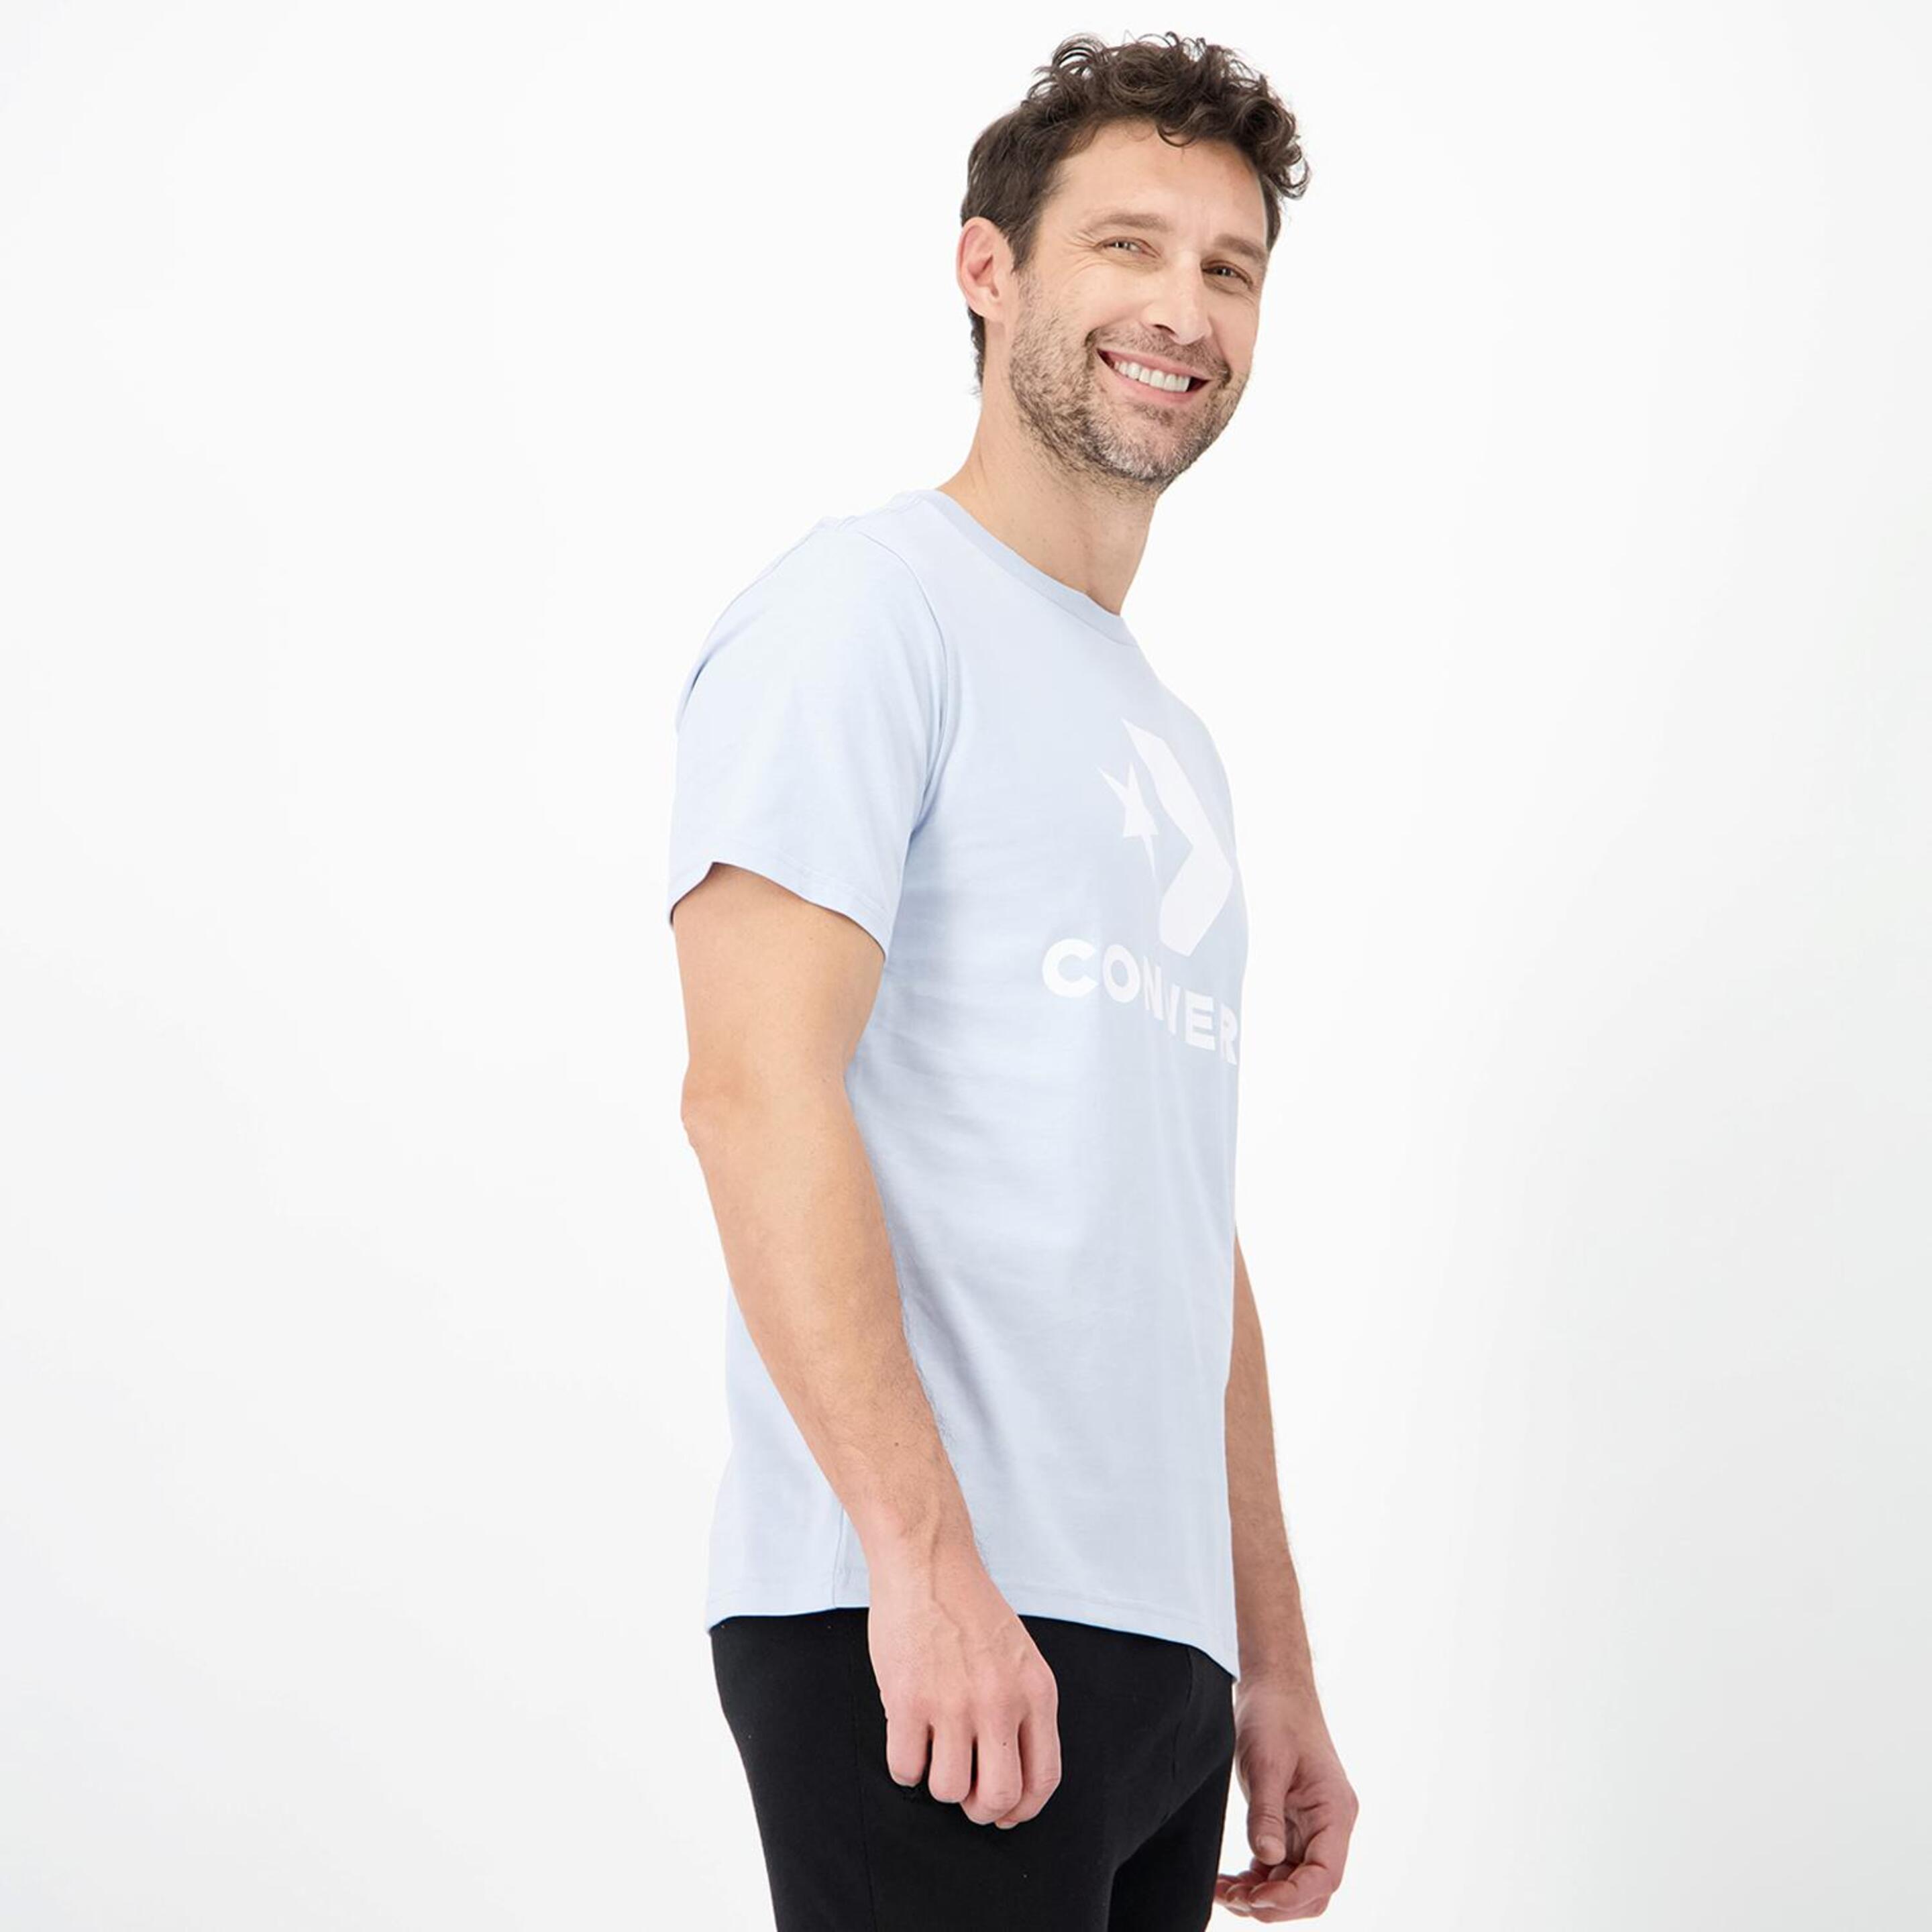 Converse Star Chevron - Azul - Camiseta Hombre  | Sprinter